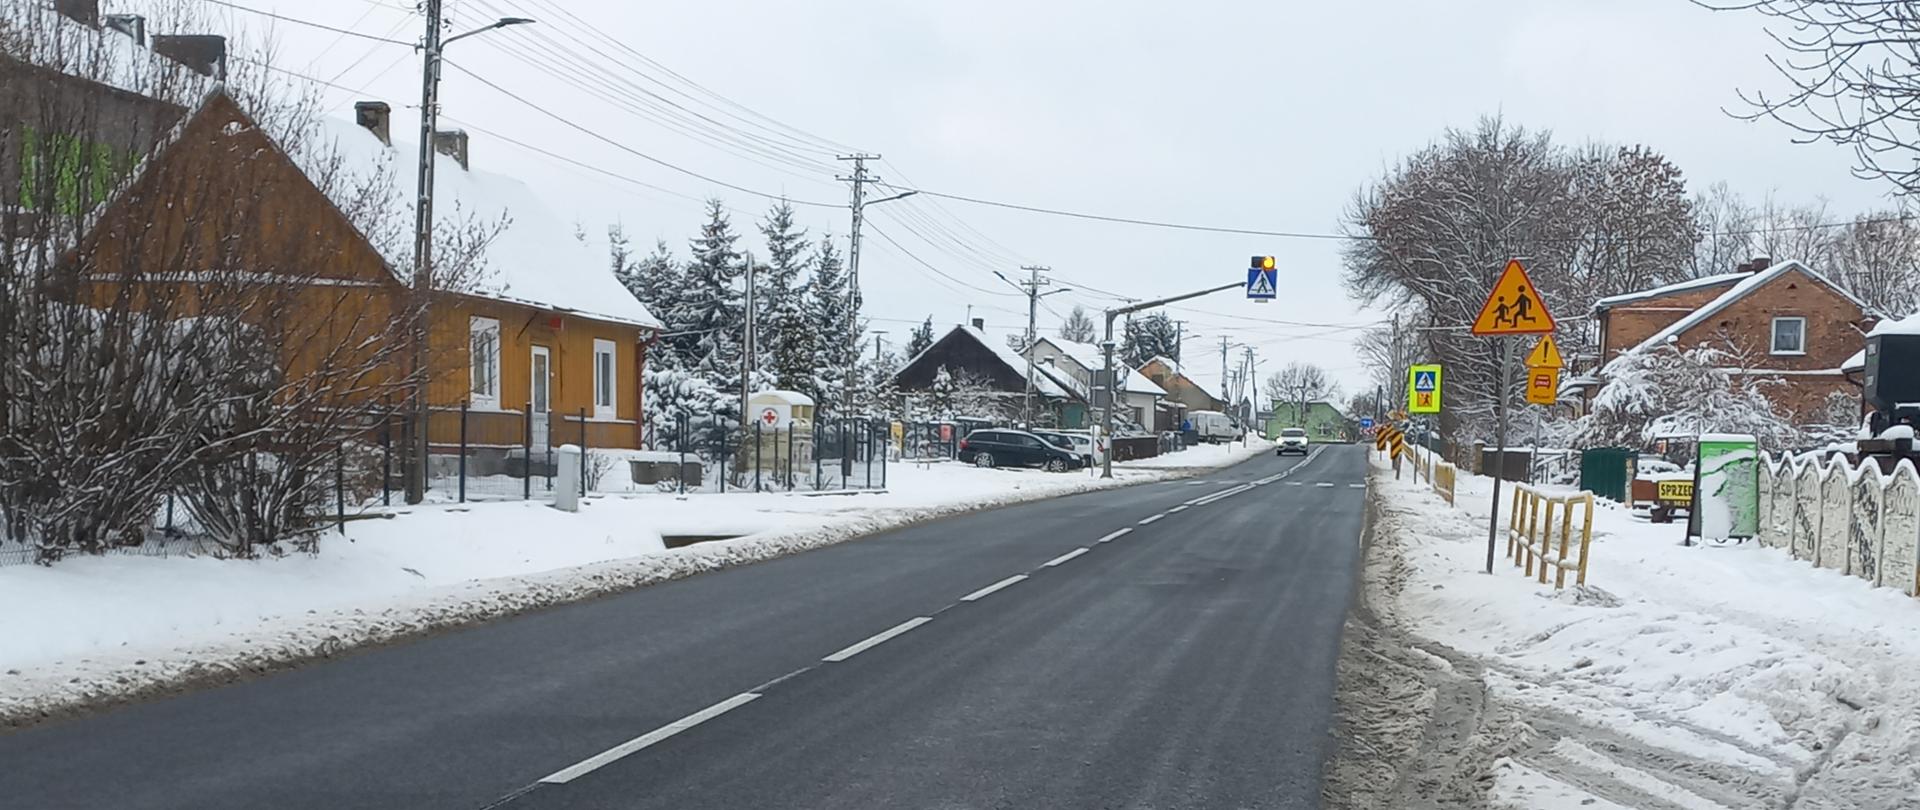 DK78 Moskorzew - droga jednojezdniowa, domy przy drodze, śnieg obok drogi, w oddali oznakowane przejście dla pieszych 